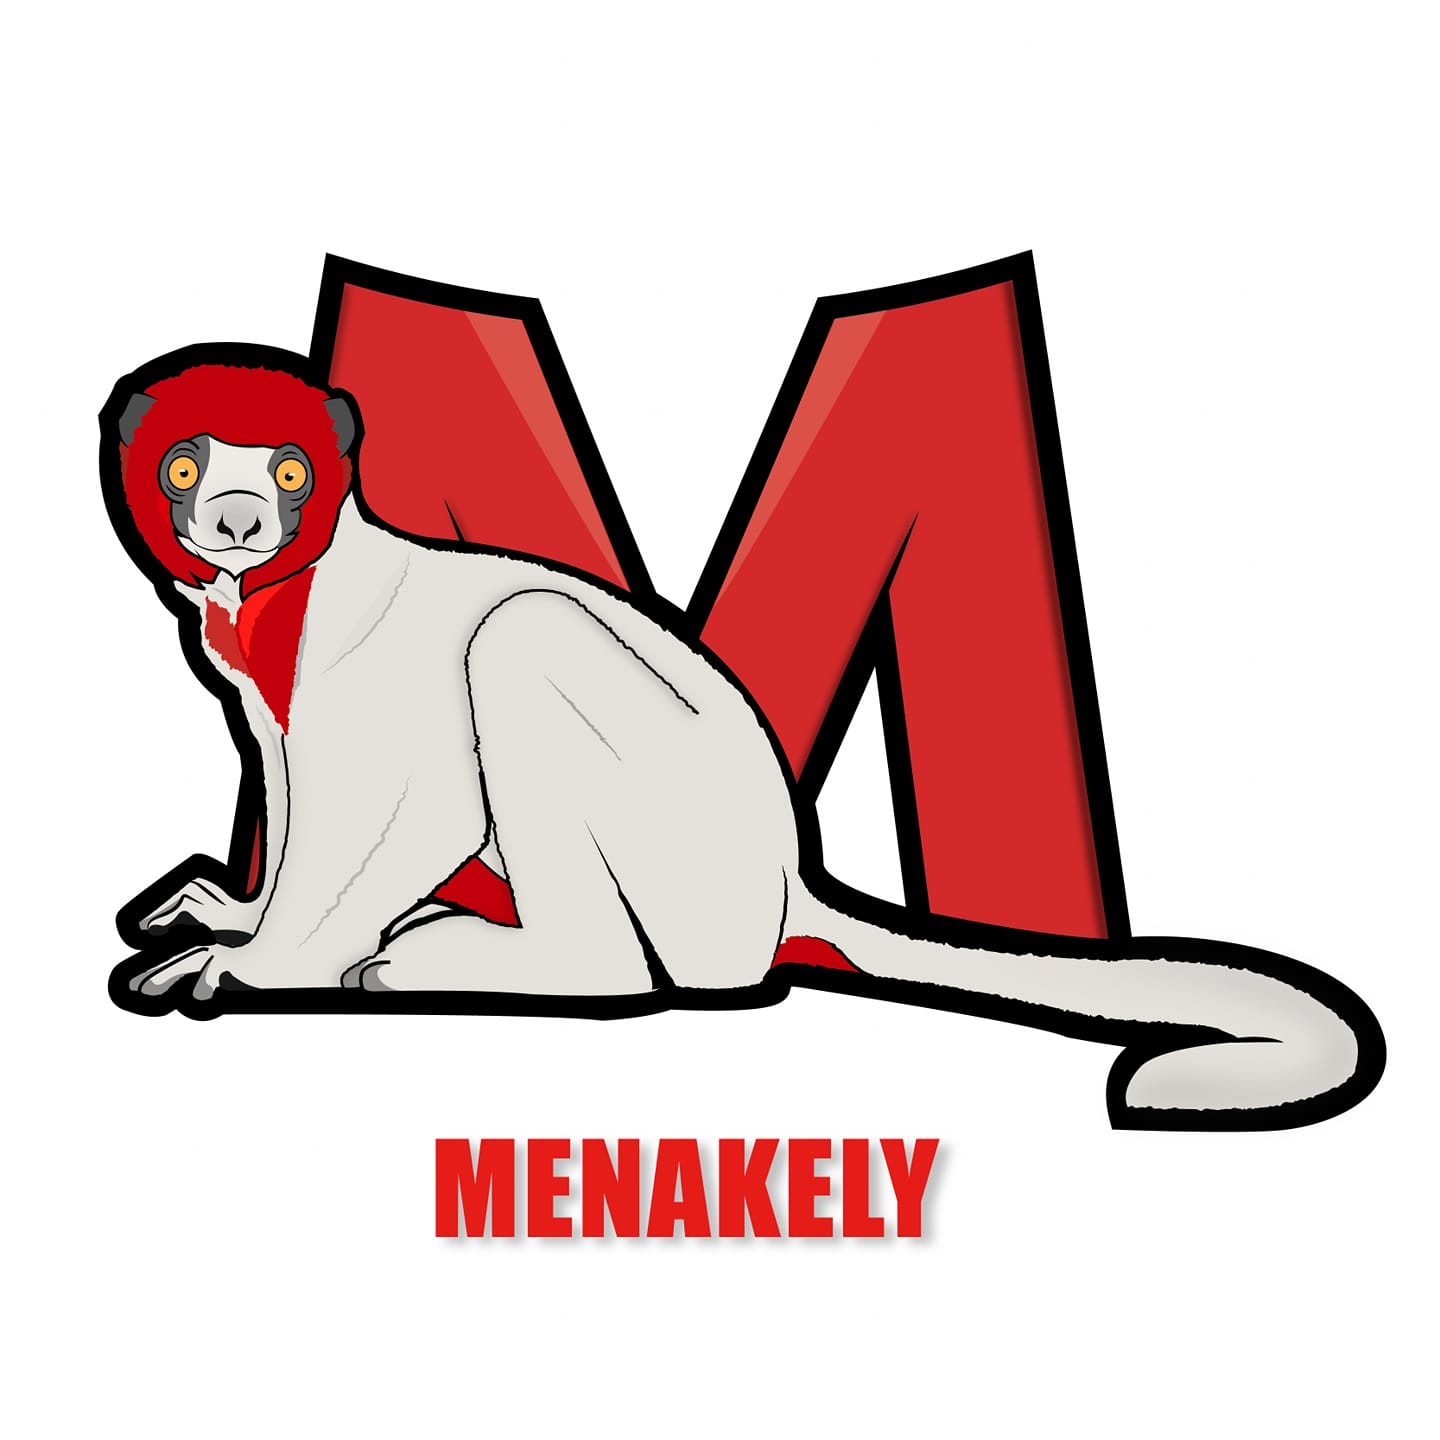 Menakely – Promouvoir les produits avec une forte éthique environnementale